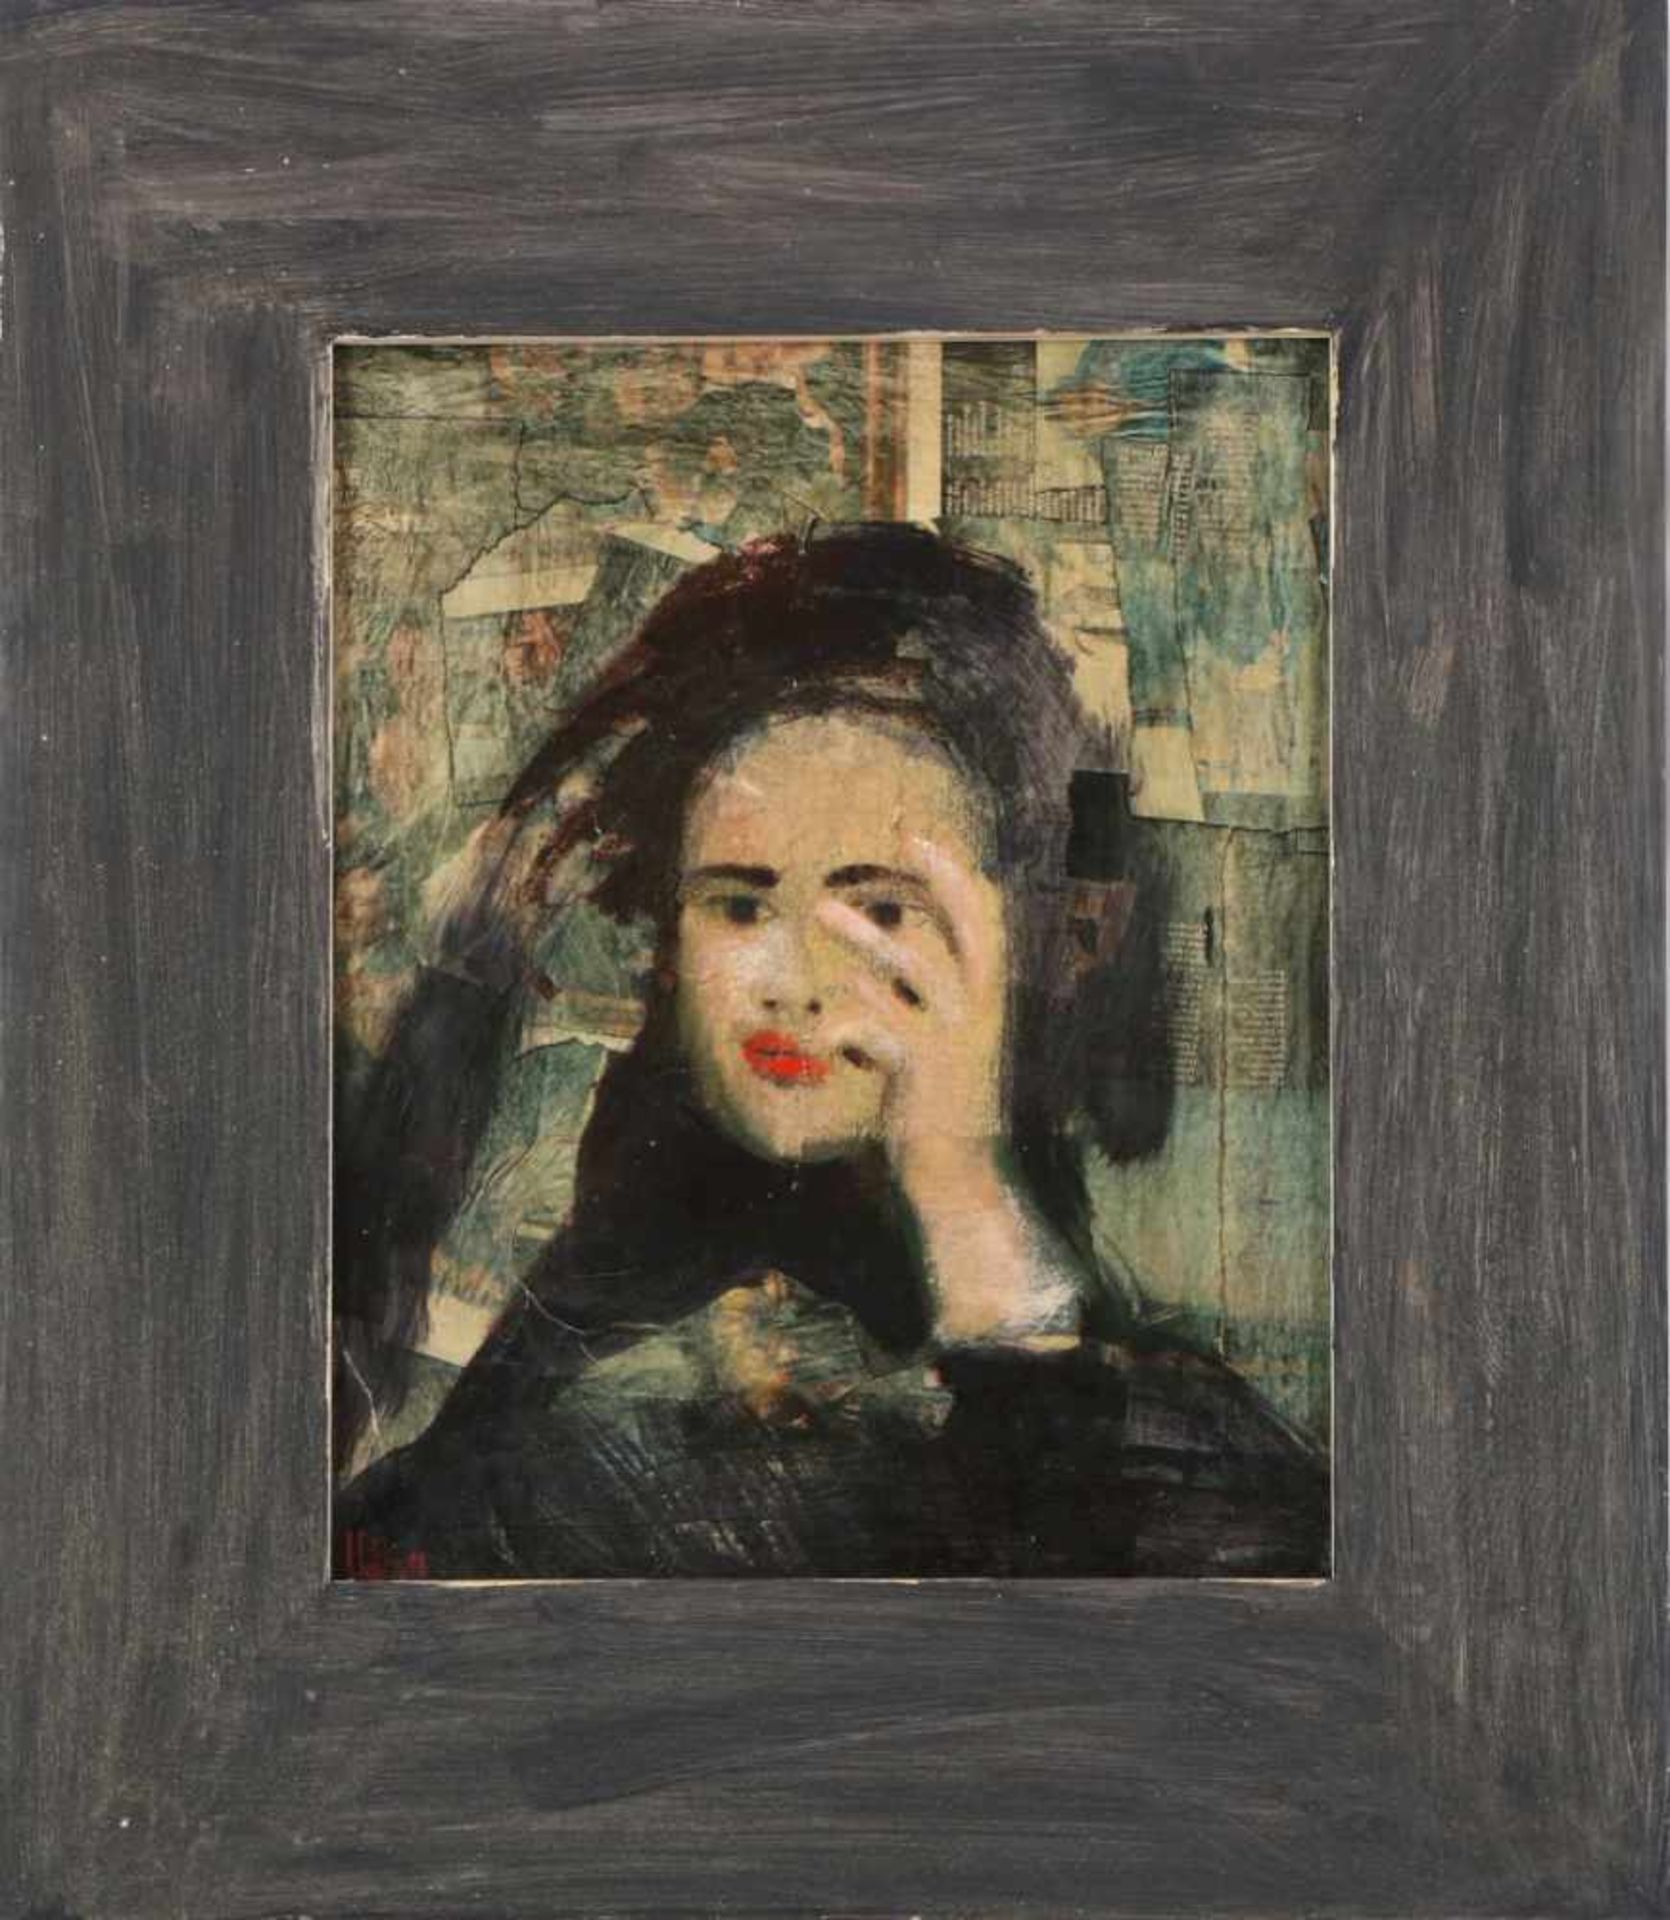 JUAN CASTILLA (1931 Sevilla)Mischtechnik/Collage auf Platte, ¨Frauenporträt mit vors Gesicht